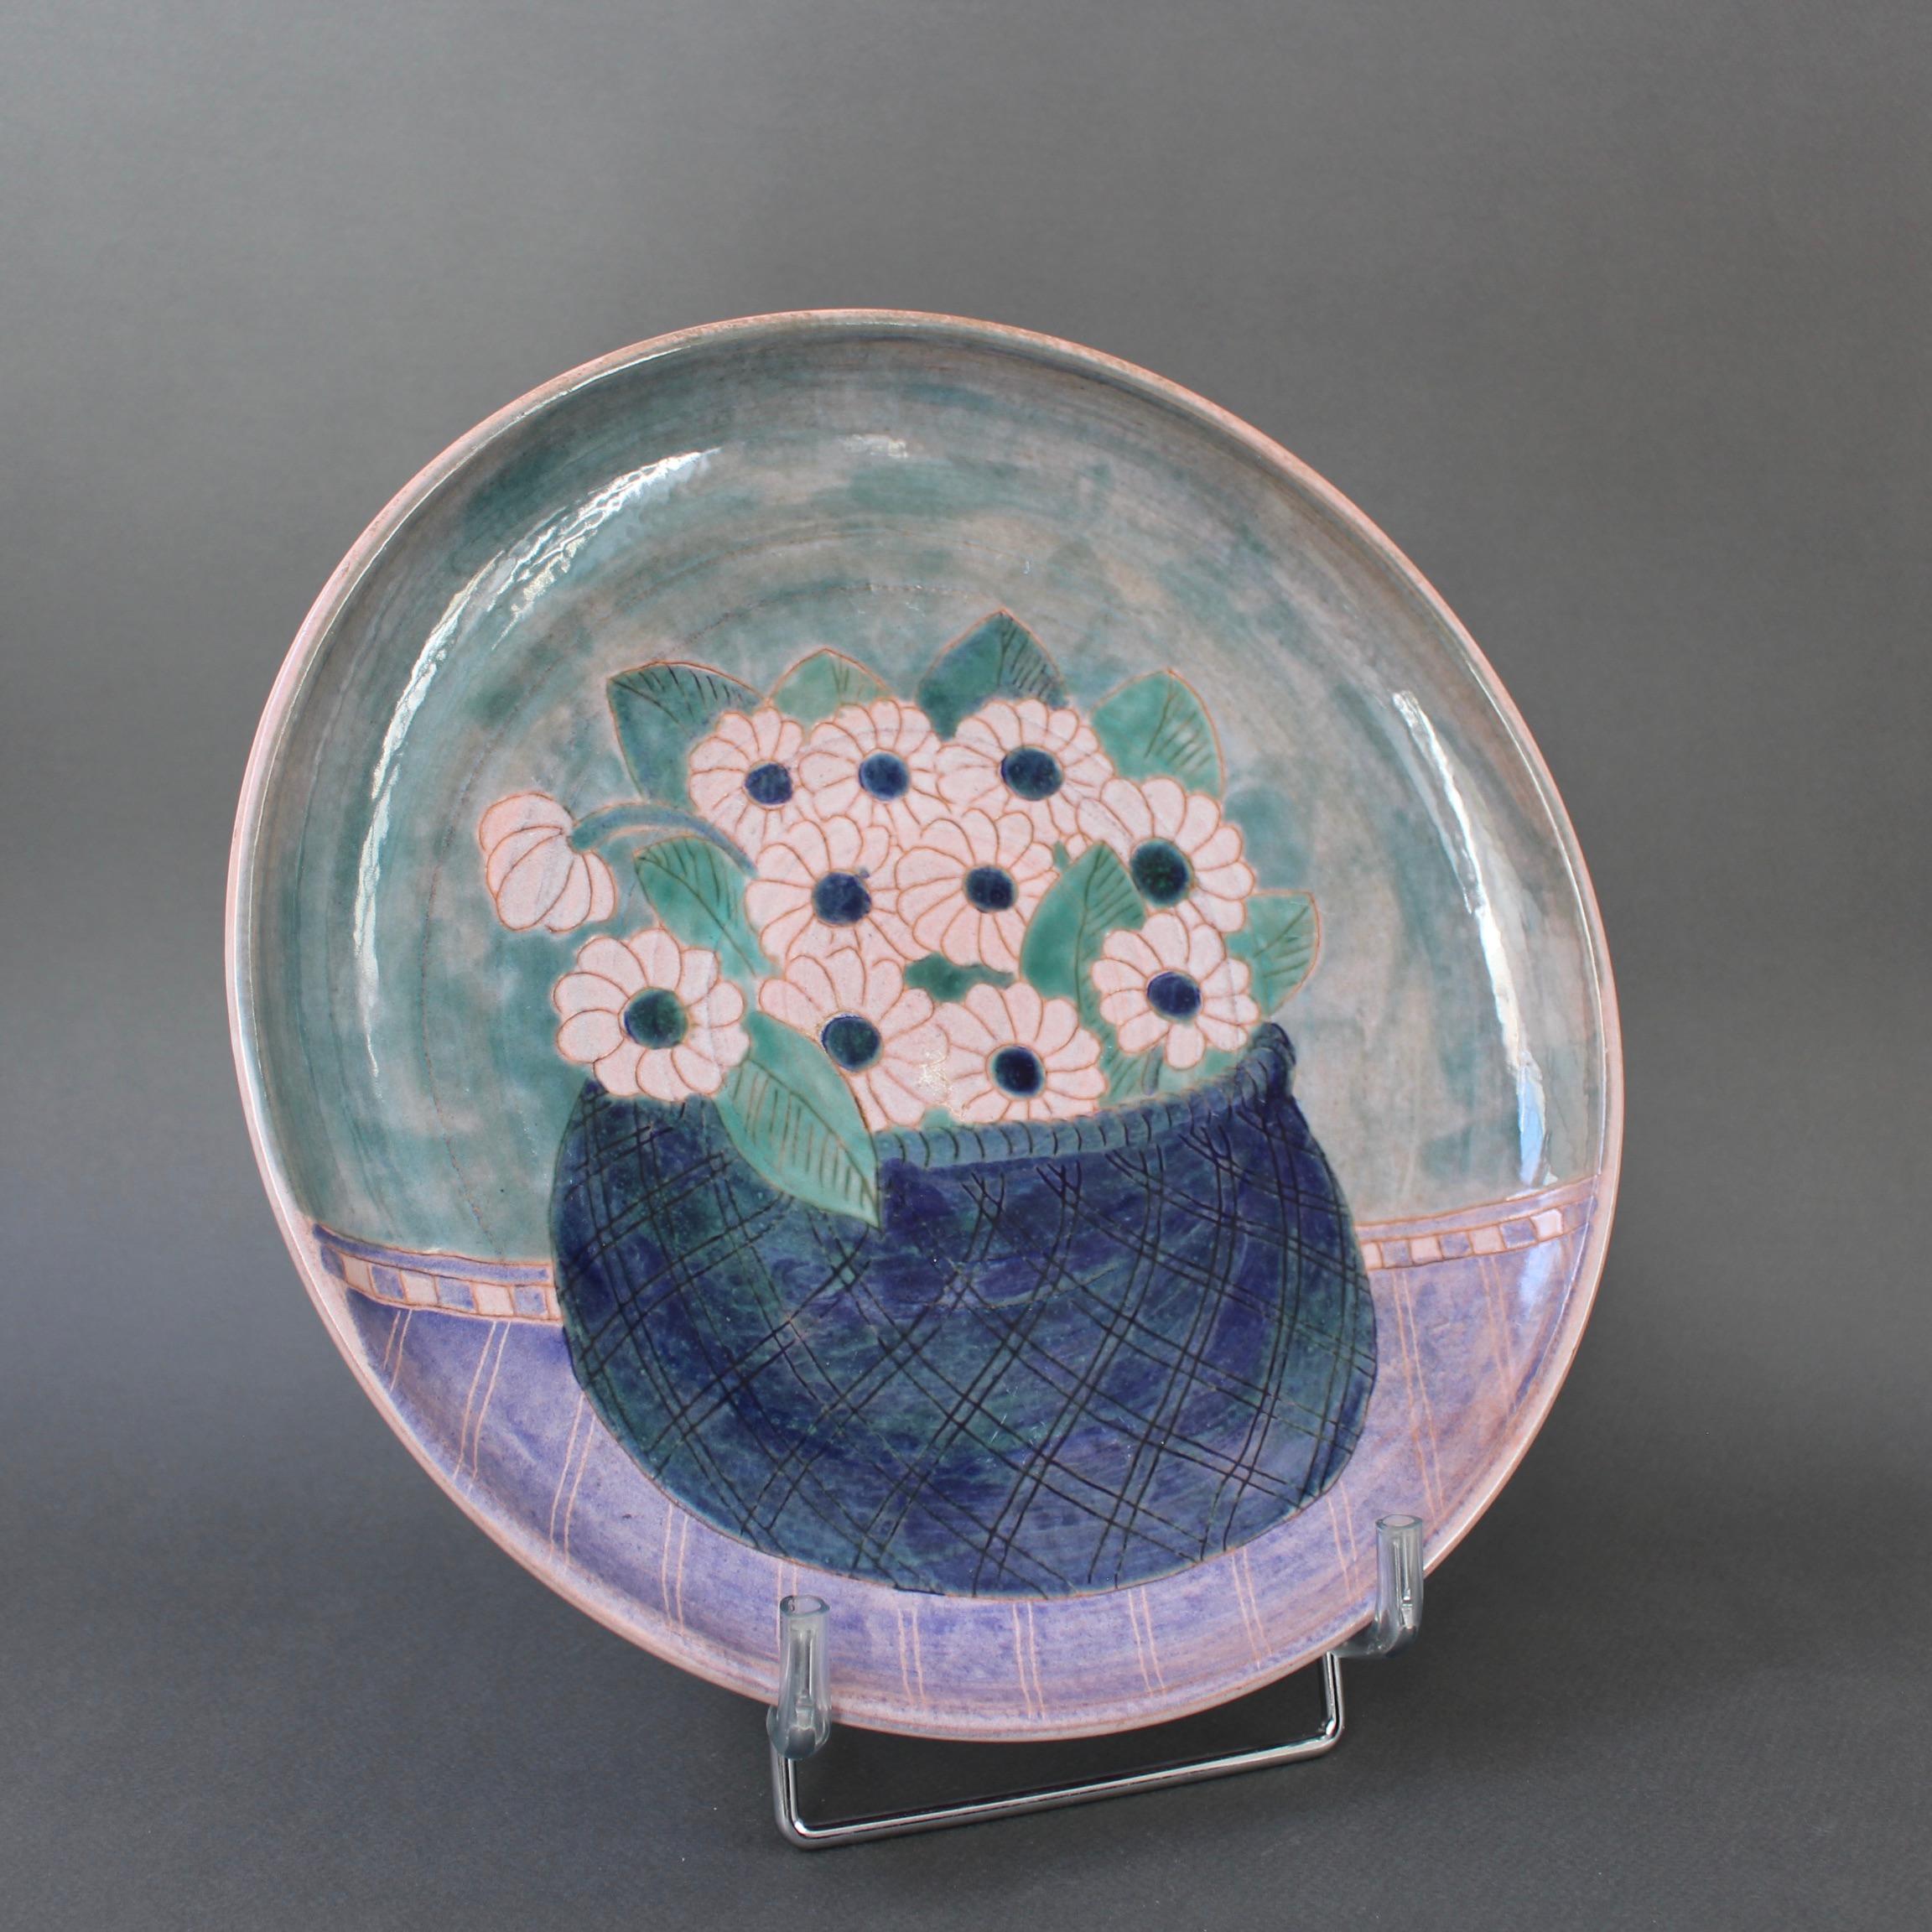 Dekorative französische Keramikplatte von Frères Cloutier (um 1970). Eine bezaubernde dekorative Platte in den für die Cloutiers typischen subtilen Farbtönen. Es ist sofort als ihres zu erkennen. In der Mitte der Platte ist ein reizvoller